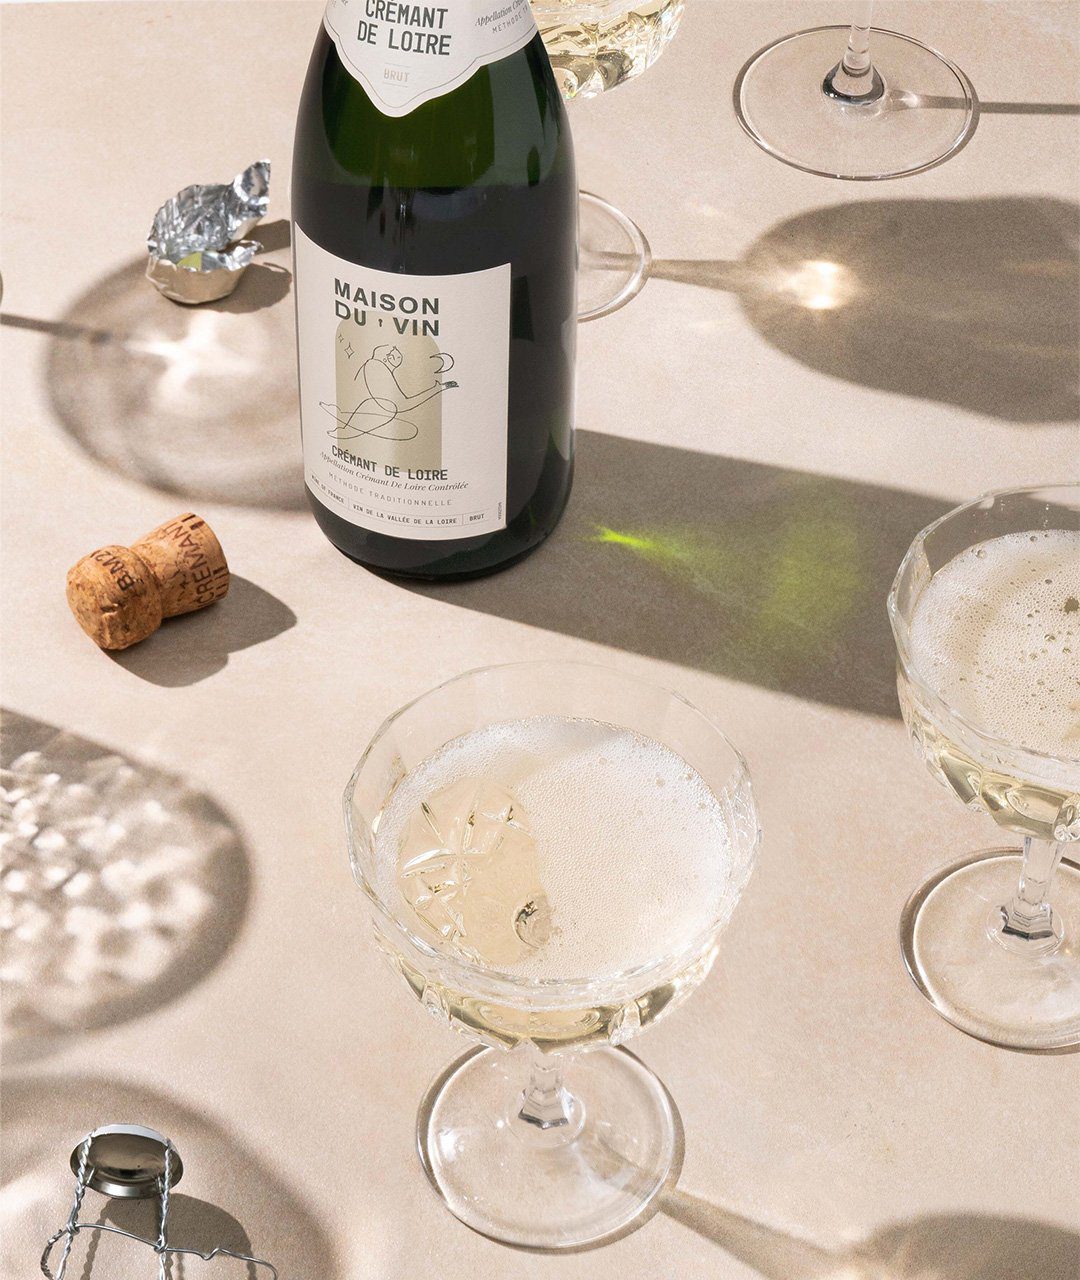 Maison Du Vin Cremant bottle with coupe glass